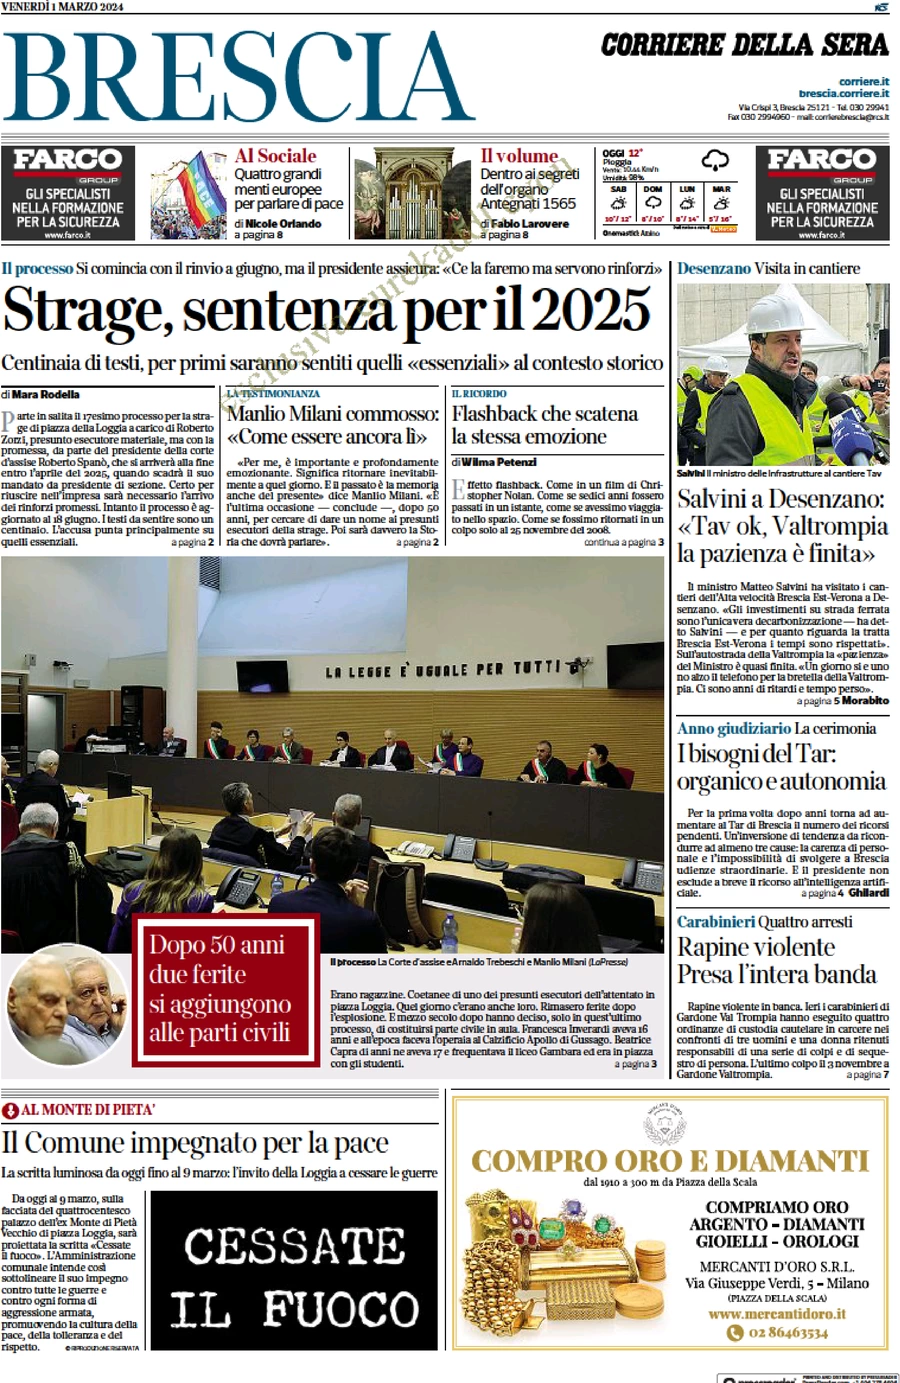 anteprima della prima pagina di corriere-della-sera-brescia del 01/03/2024